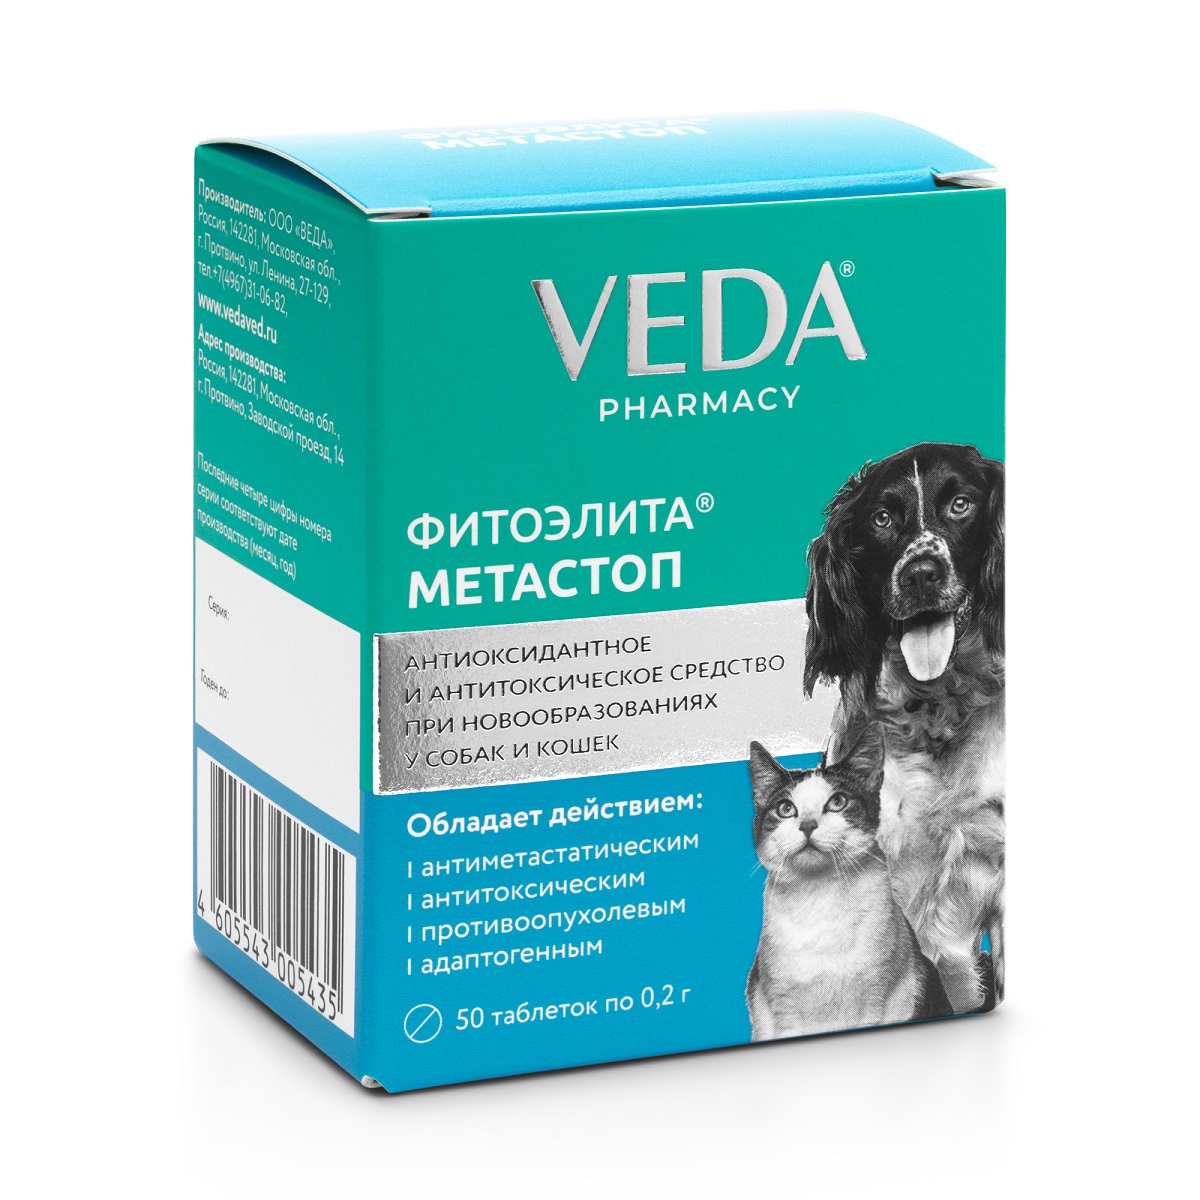 Veda Фитоэлита Метастоп Восстановительный препарат в послеоперационный период для собак и кошек, 50 таблеток